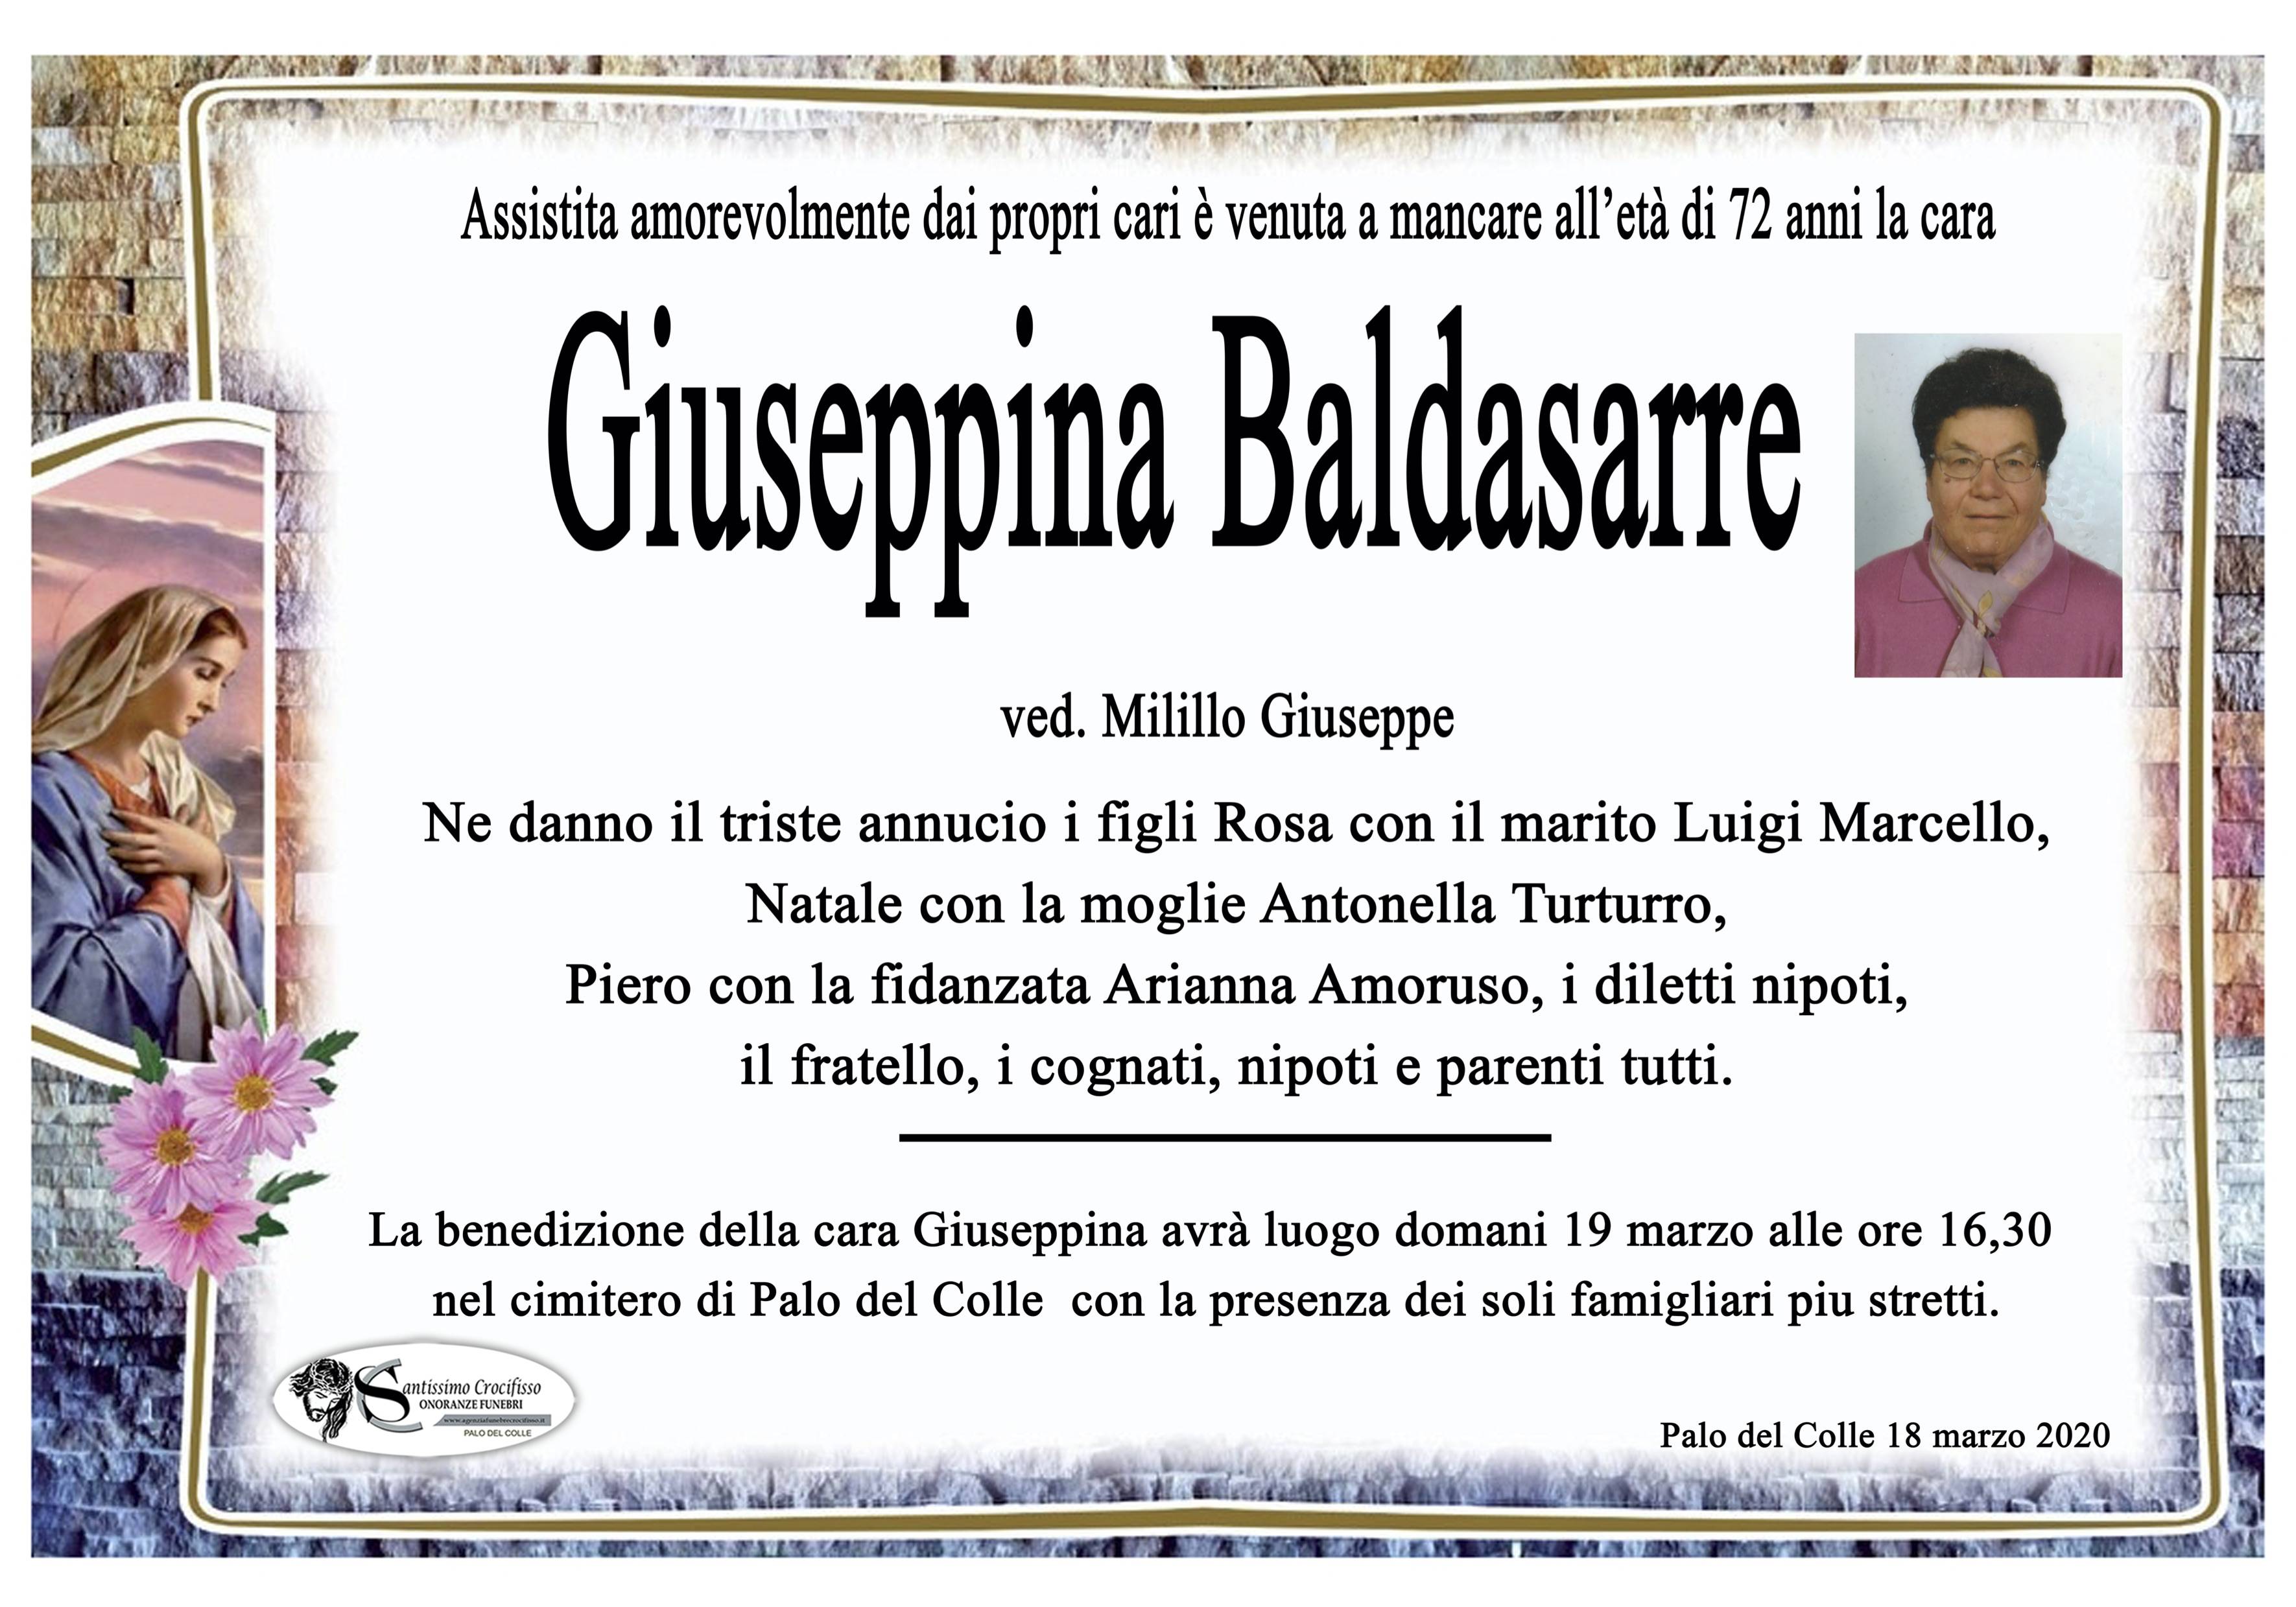 Giuseppina Baldasarre